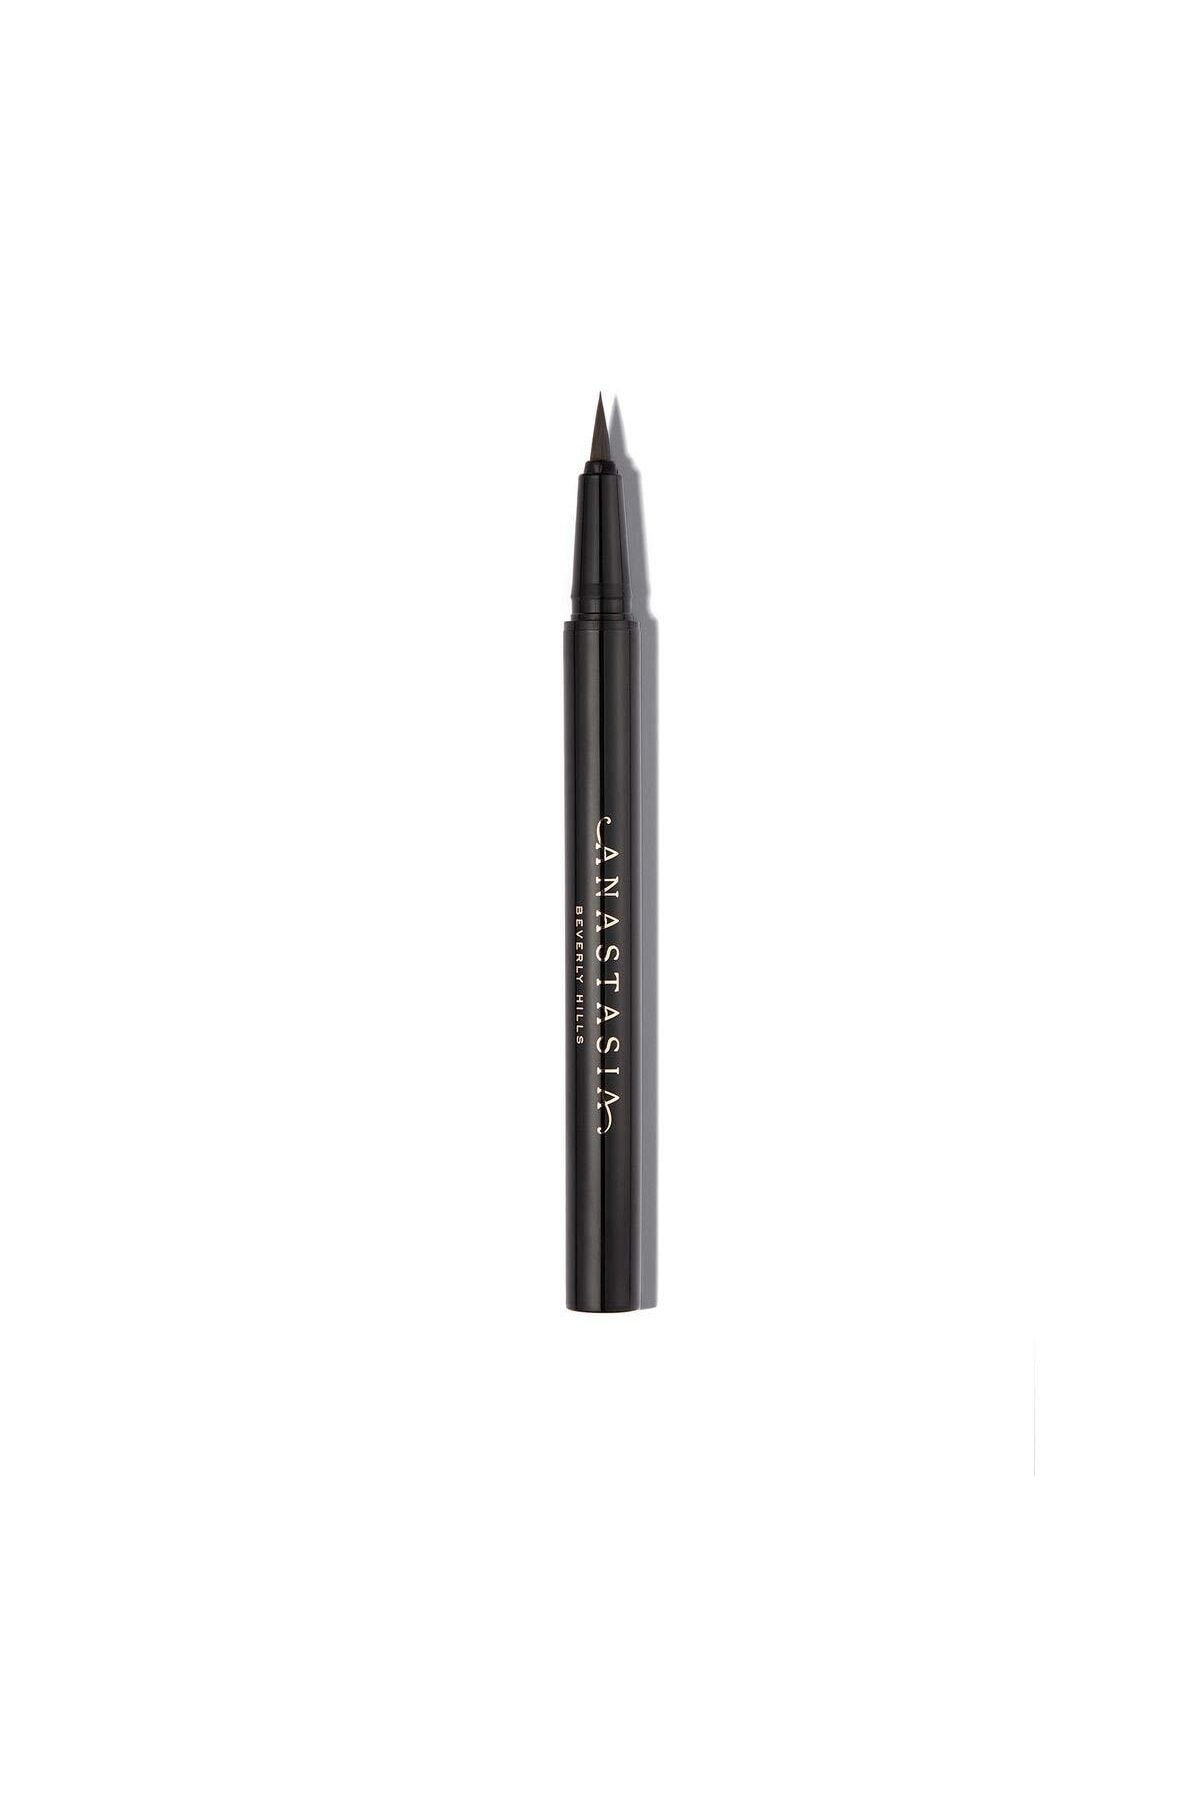 Anastasia Beverly Hills Brow Pen Doğal Görünümlü Hassas Süper Ince Dolgunlaştırıcı Kaş Kalemi Soft Brown